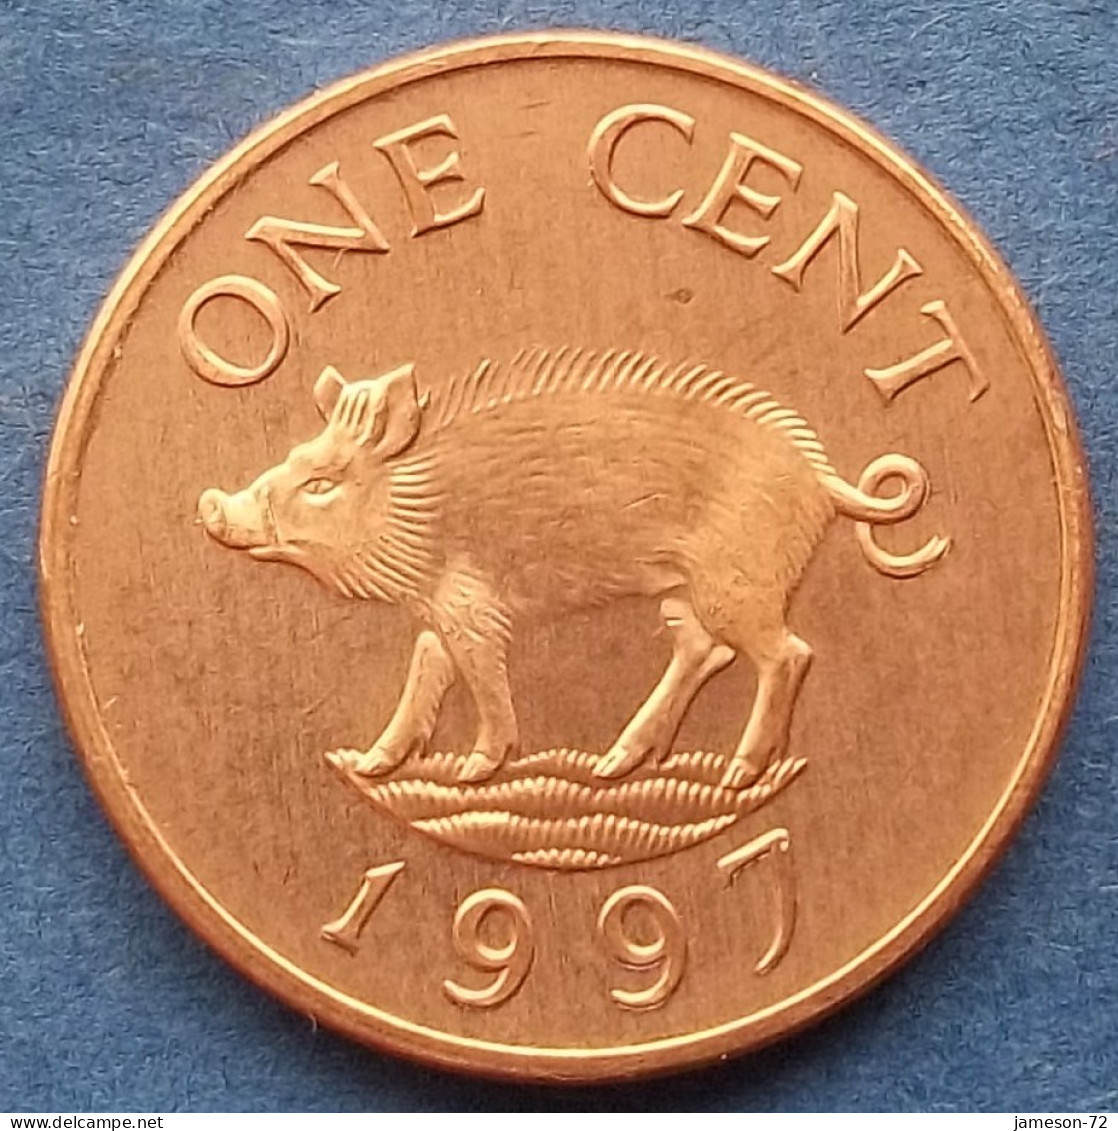 BERMUDA - 1 Cent 1997 "Wild Boar" KM# 44b Elizabeth II Decimal Coinage (1970-2022) - Edelweiss Coins - Bermudas